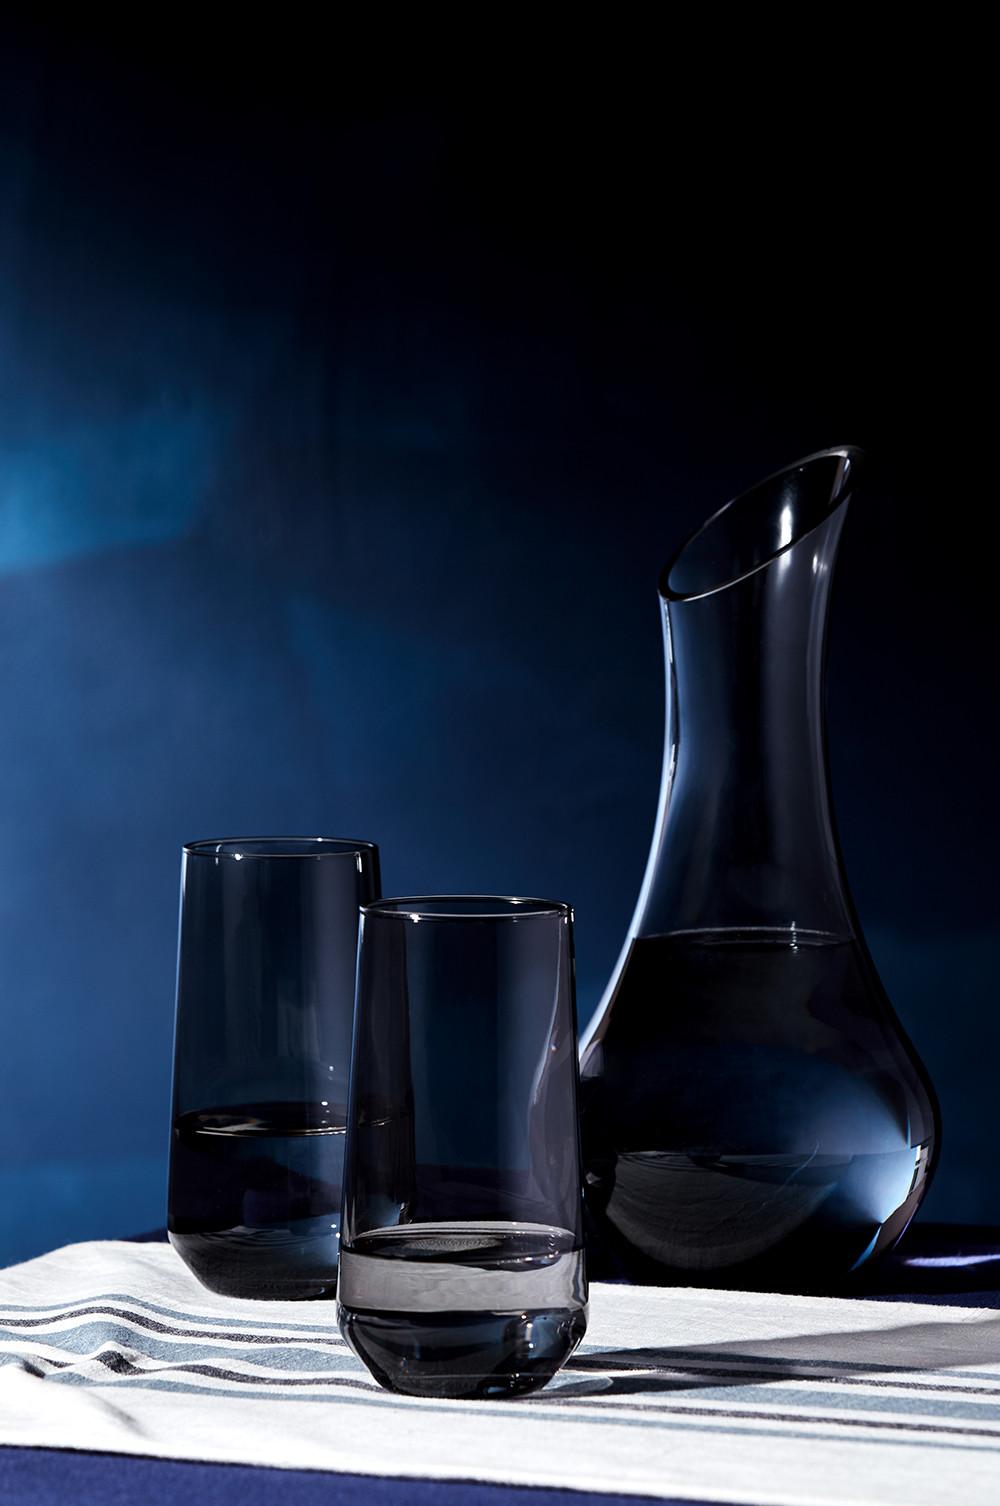 Jarra y vasos de cristal ahumado sobre fondo azul